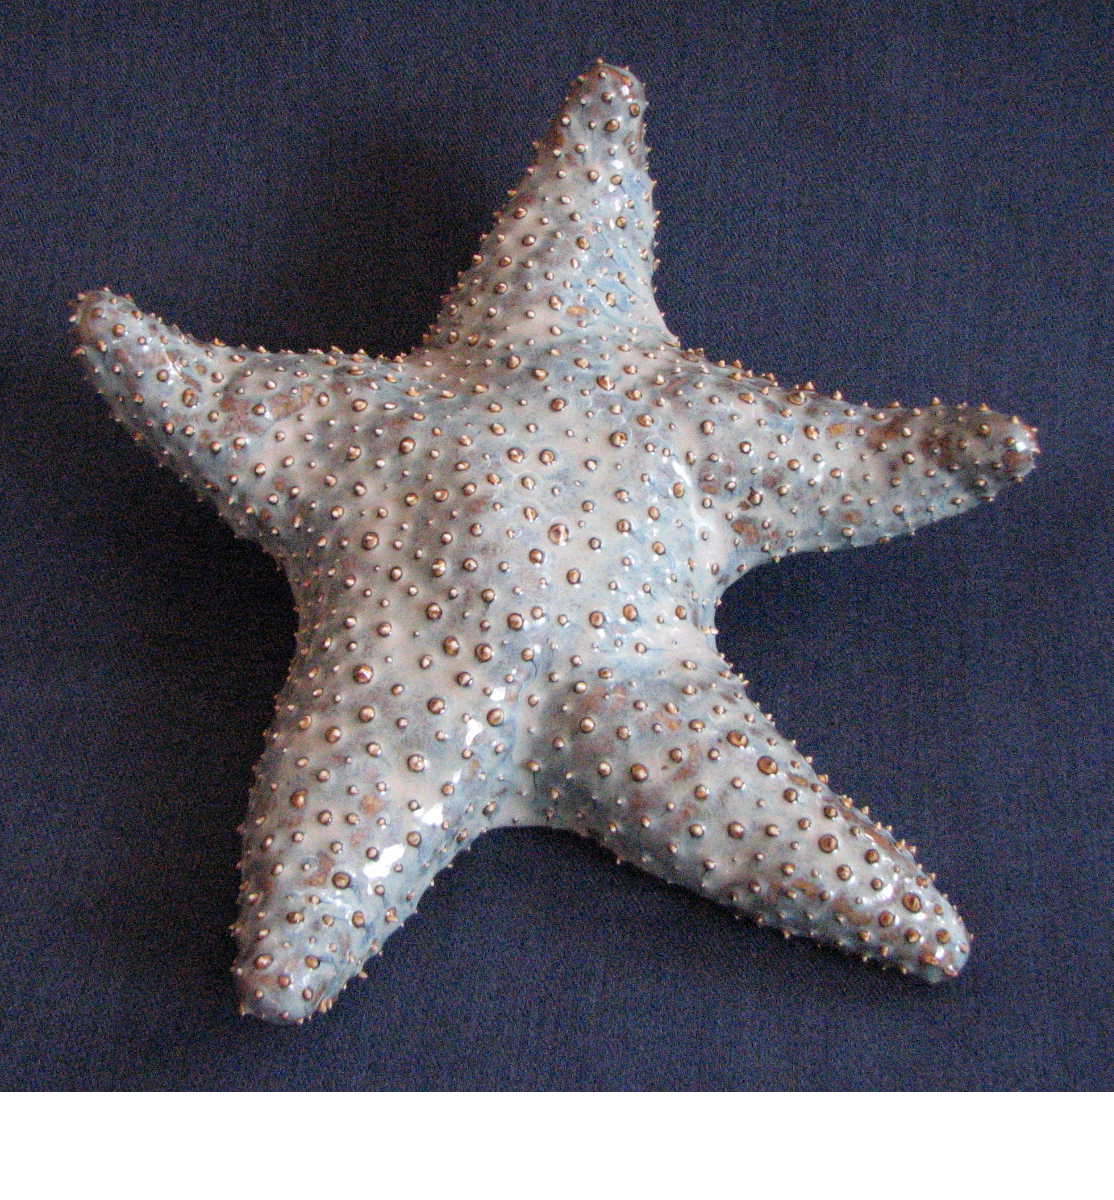 [starfish.Steve.40.JPG]